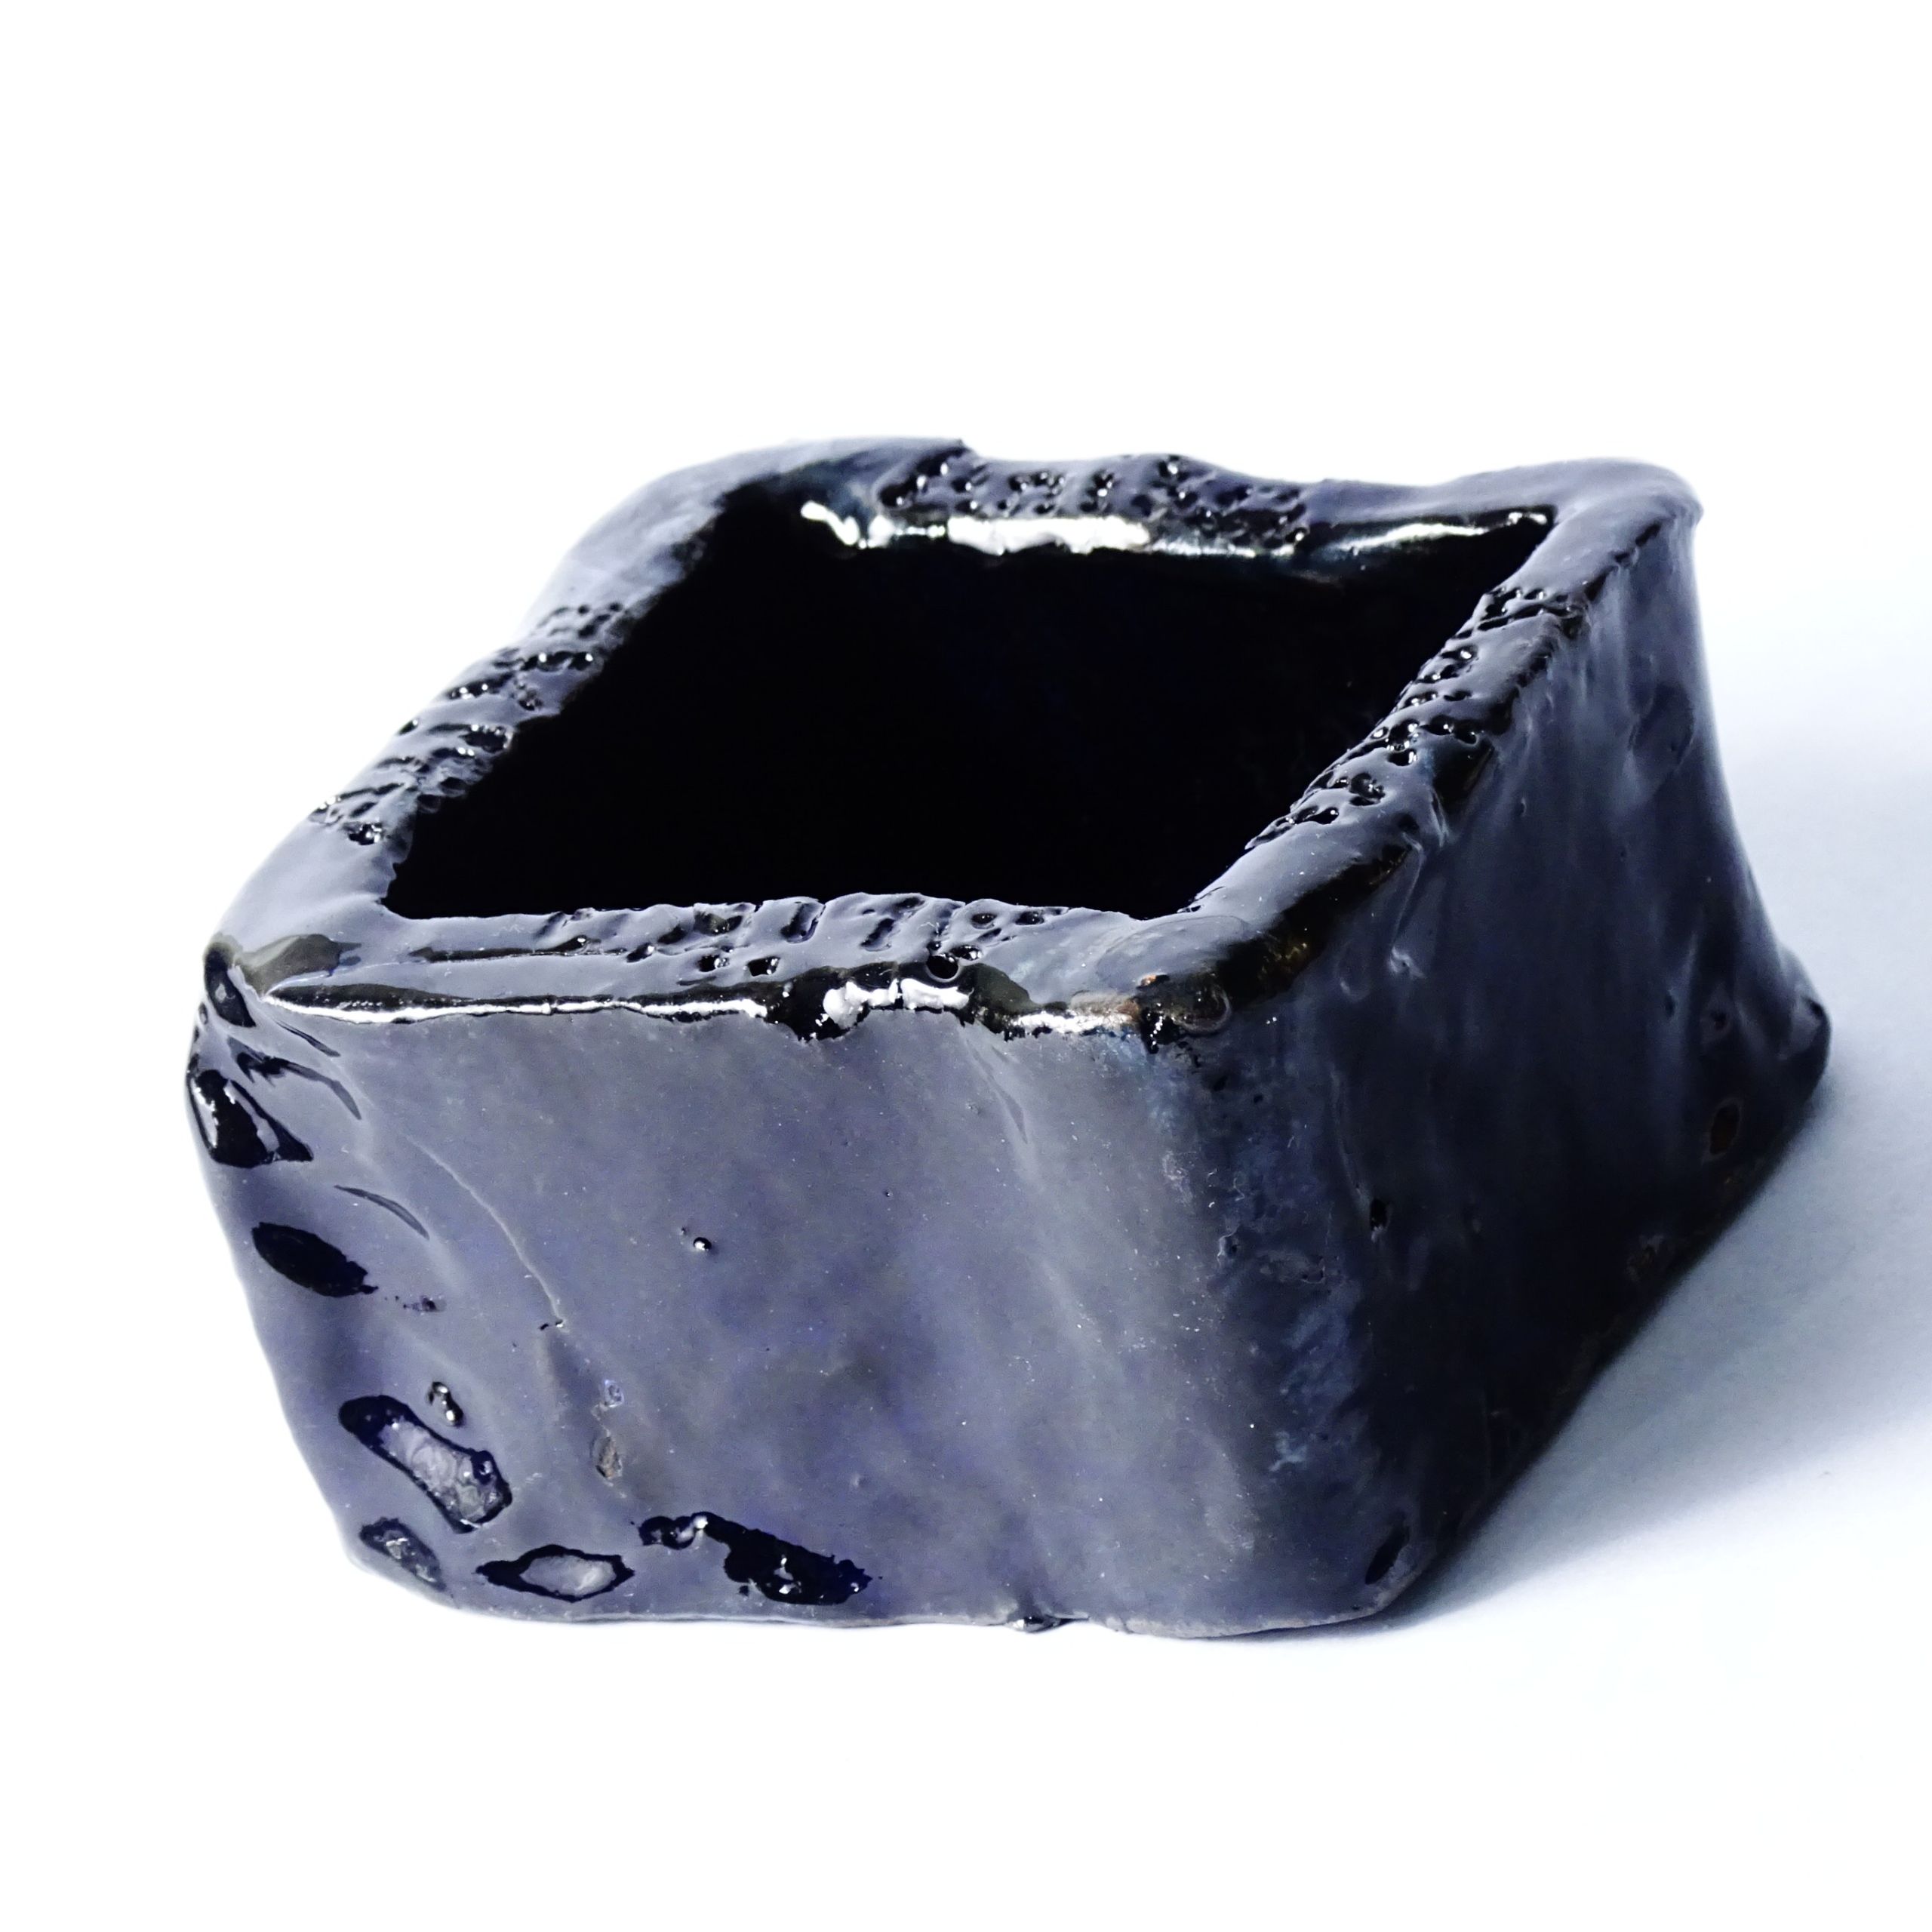 ceramika autorska kobaltowy pojemnik miseczka naczynie